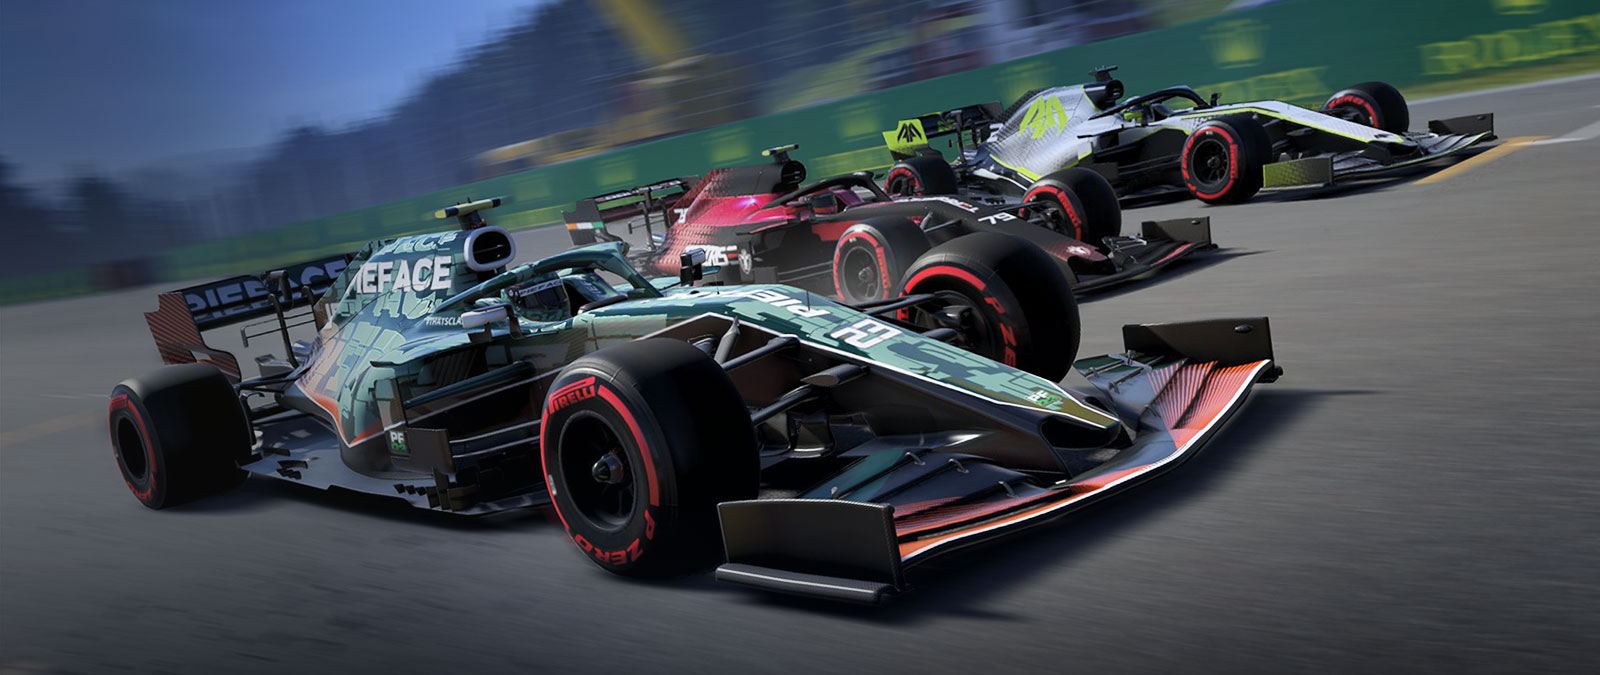 Tři formule F1 jedoucí vedle sebe na trati.